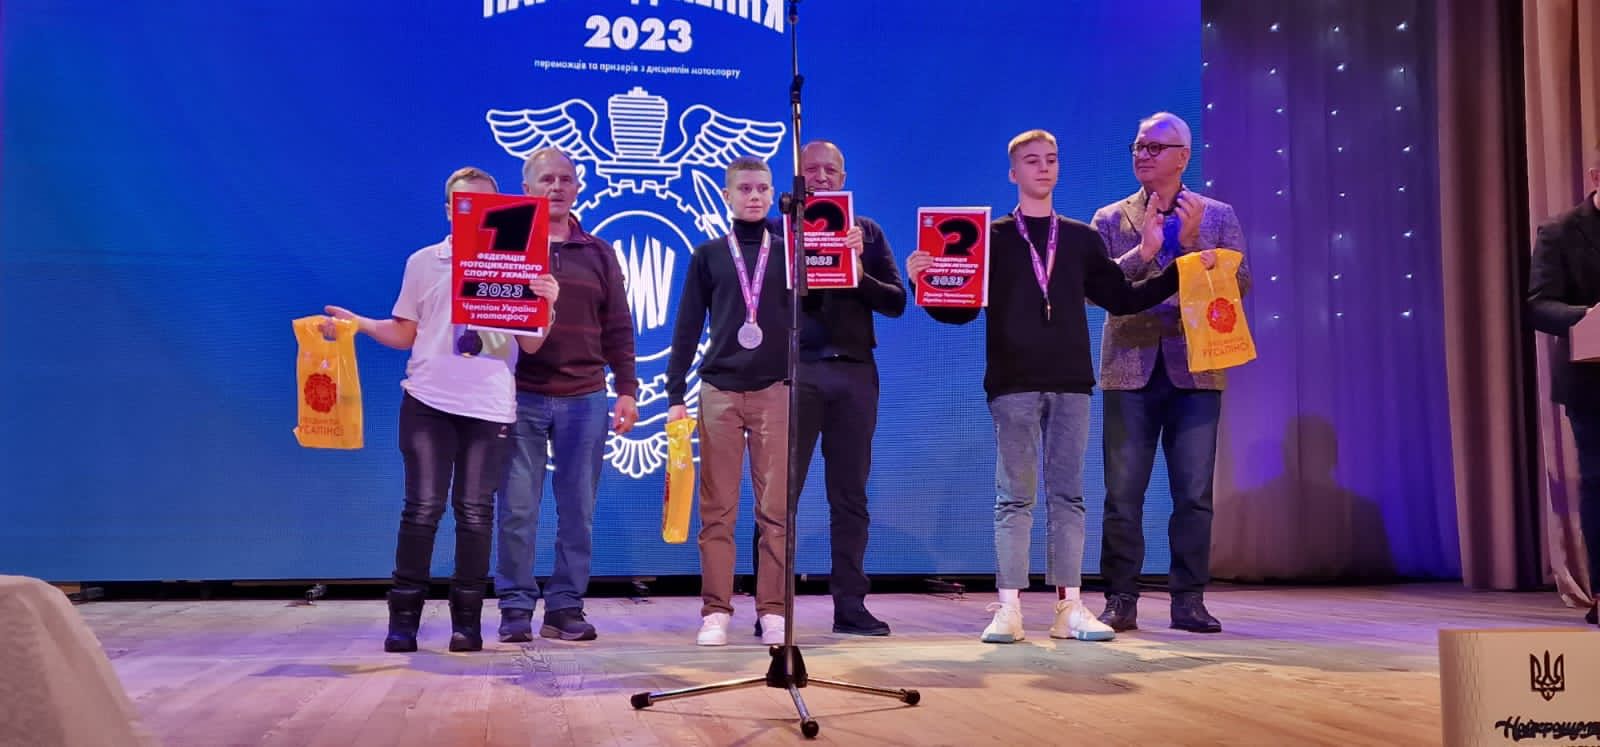 Юні мотоспортсмени отримали нагороди від Благодійного фонду Людмили Русаліної “Разом” за підсумками сезону-2023